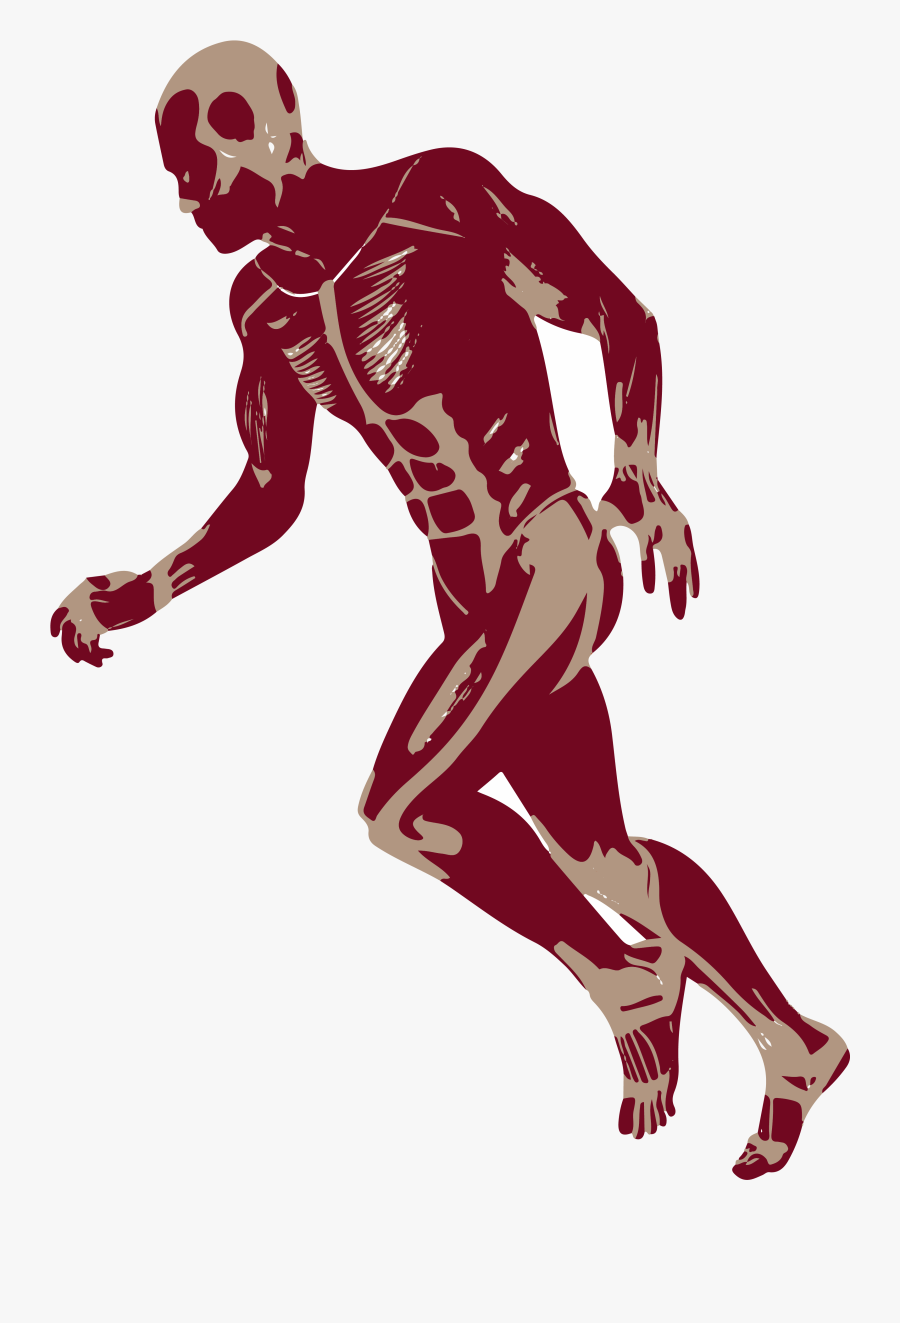 3d Man Png -3d Running Man Muscles Anatomy D Png - Running Man 3d Png, Transparent Clipart